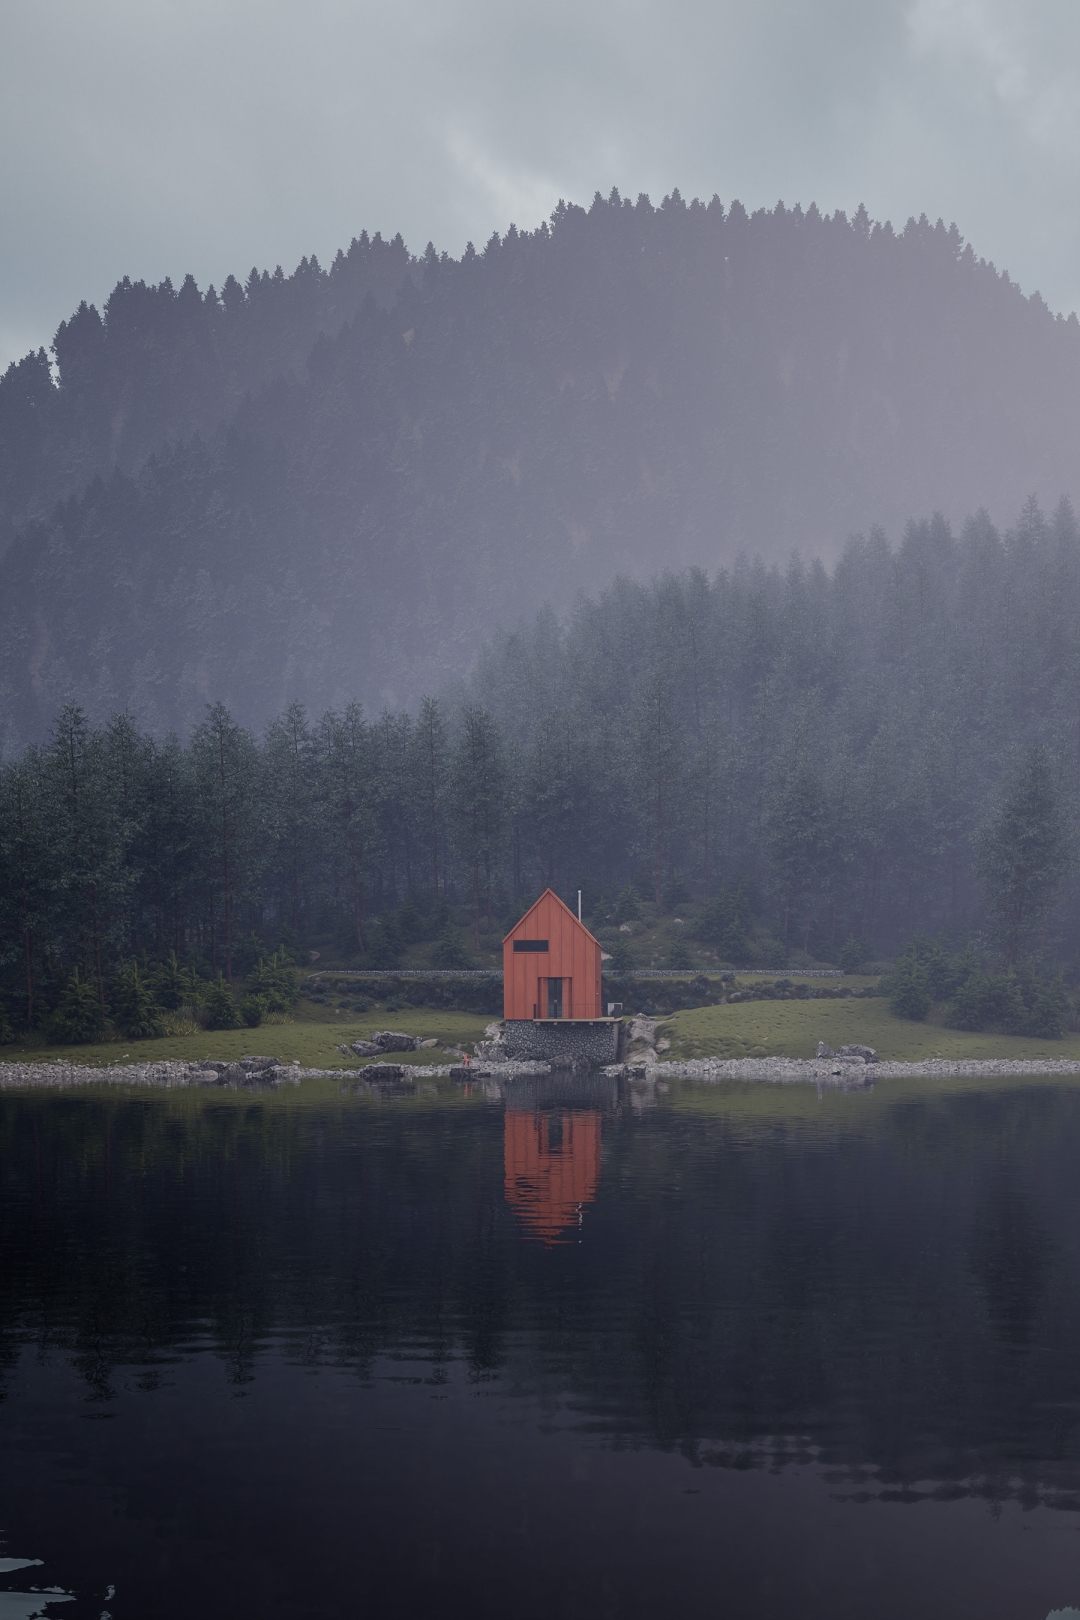 Hrvatski studio osmislio je ovu crvenu ribarsku kućicu na jezeru koja u isto vrijeme izgleda mistično i privlačno